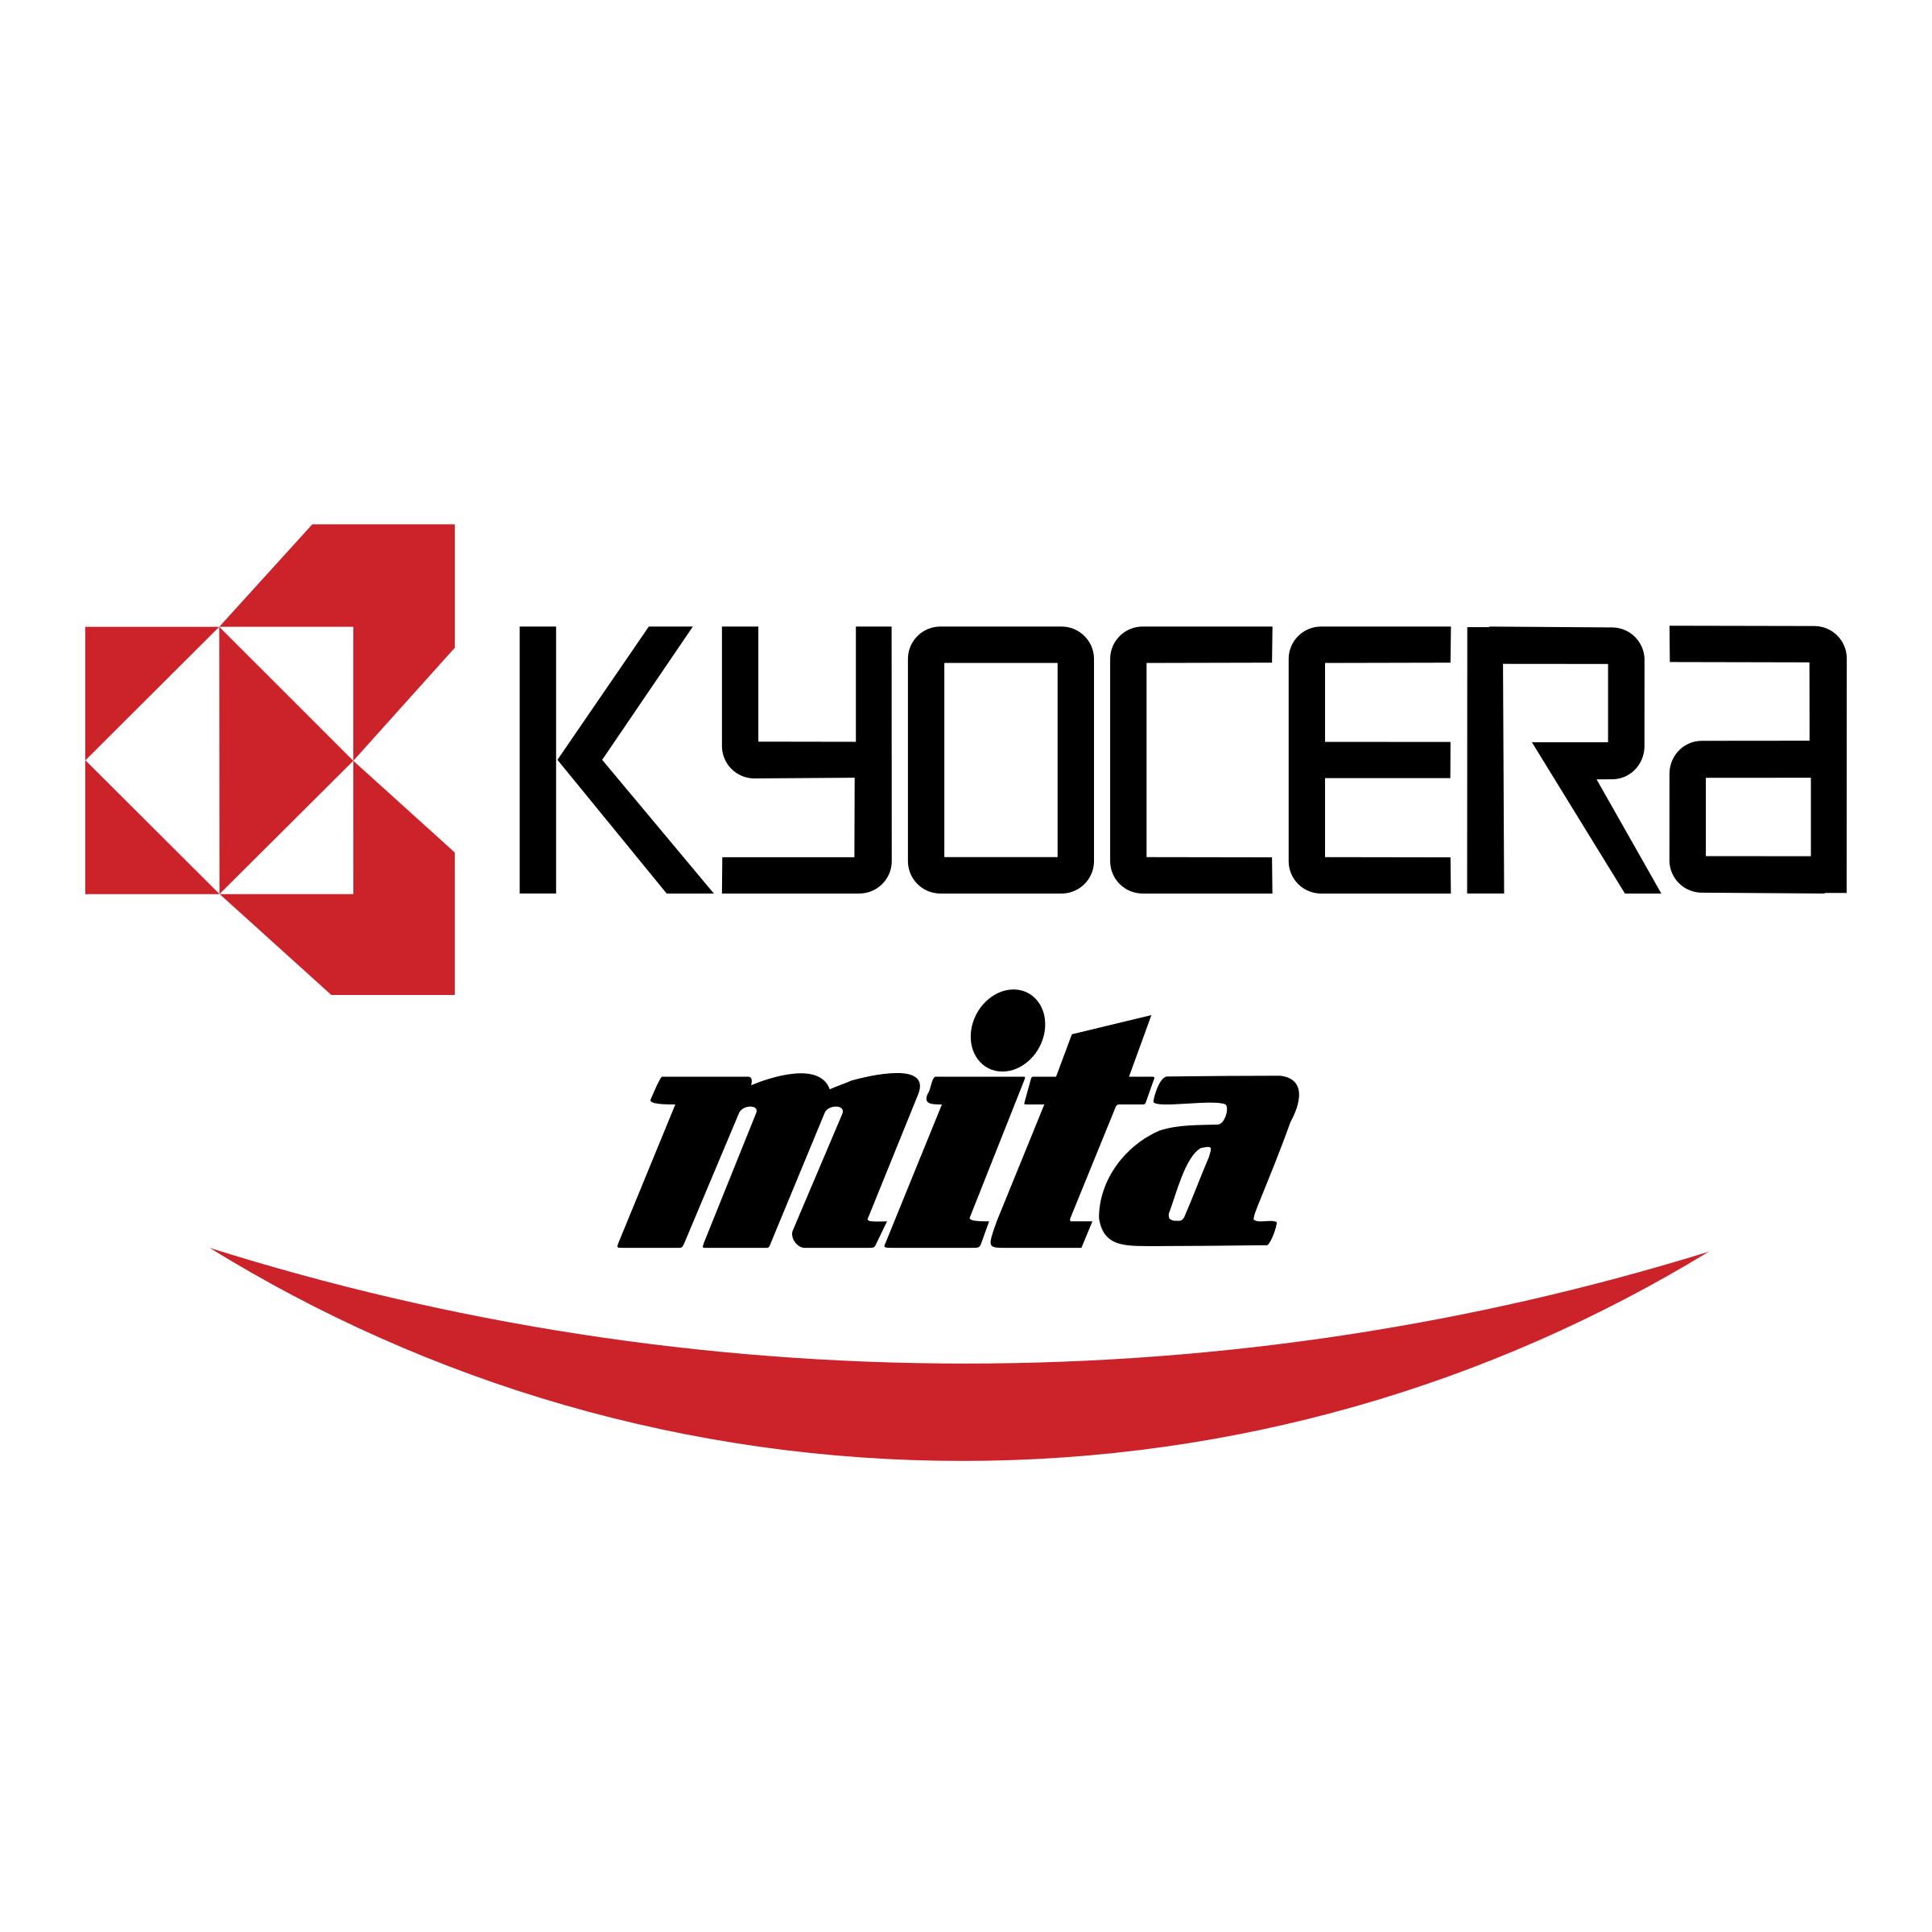 kyocera-mita-logo-png-transparent